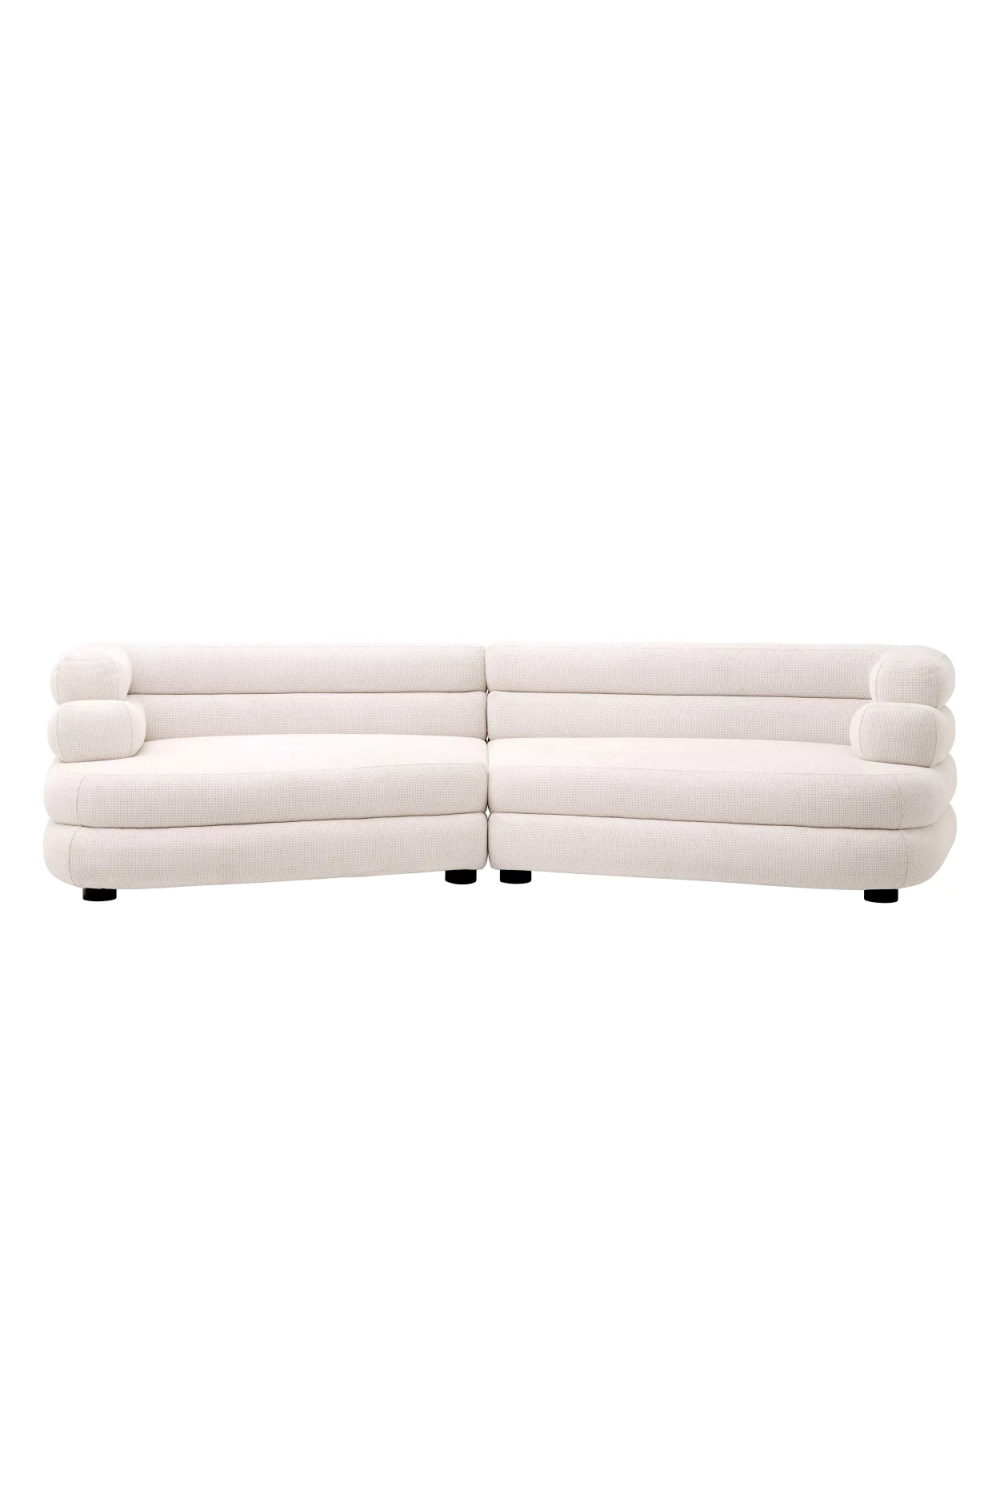 Image of White Fabric Modular Sofa | Eichholtz Malaga